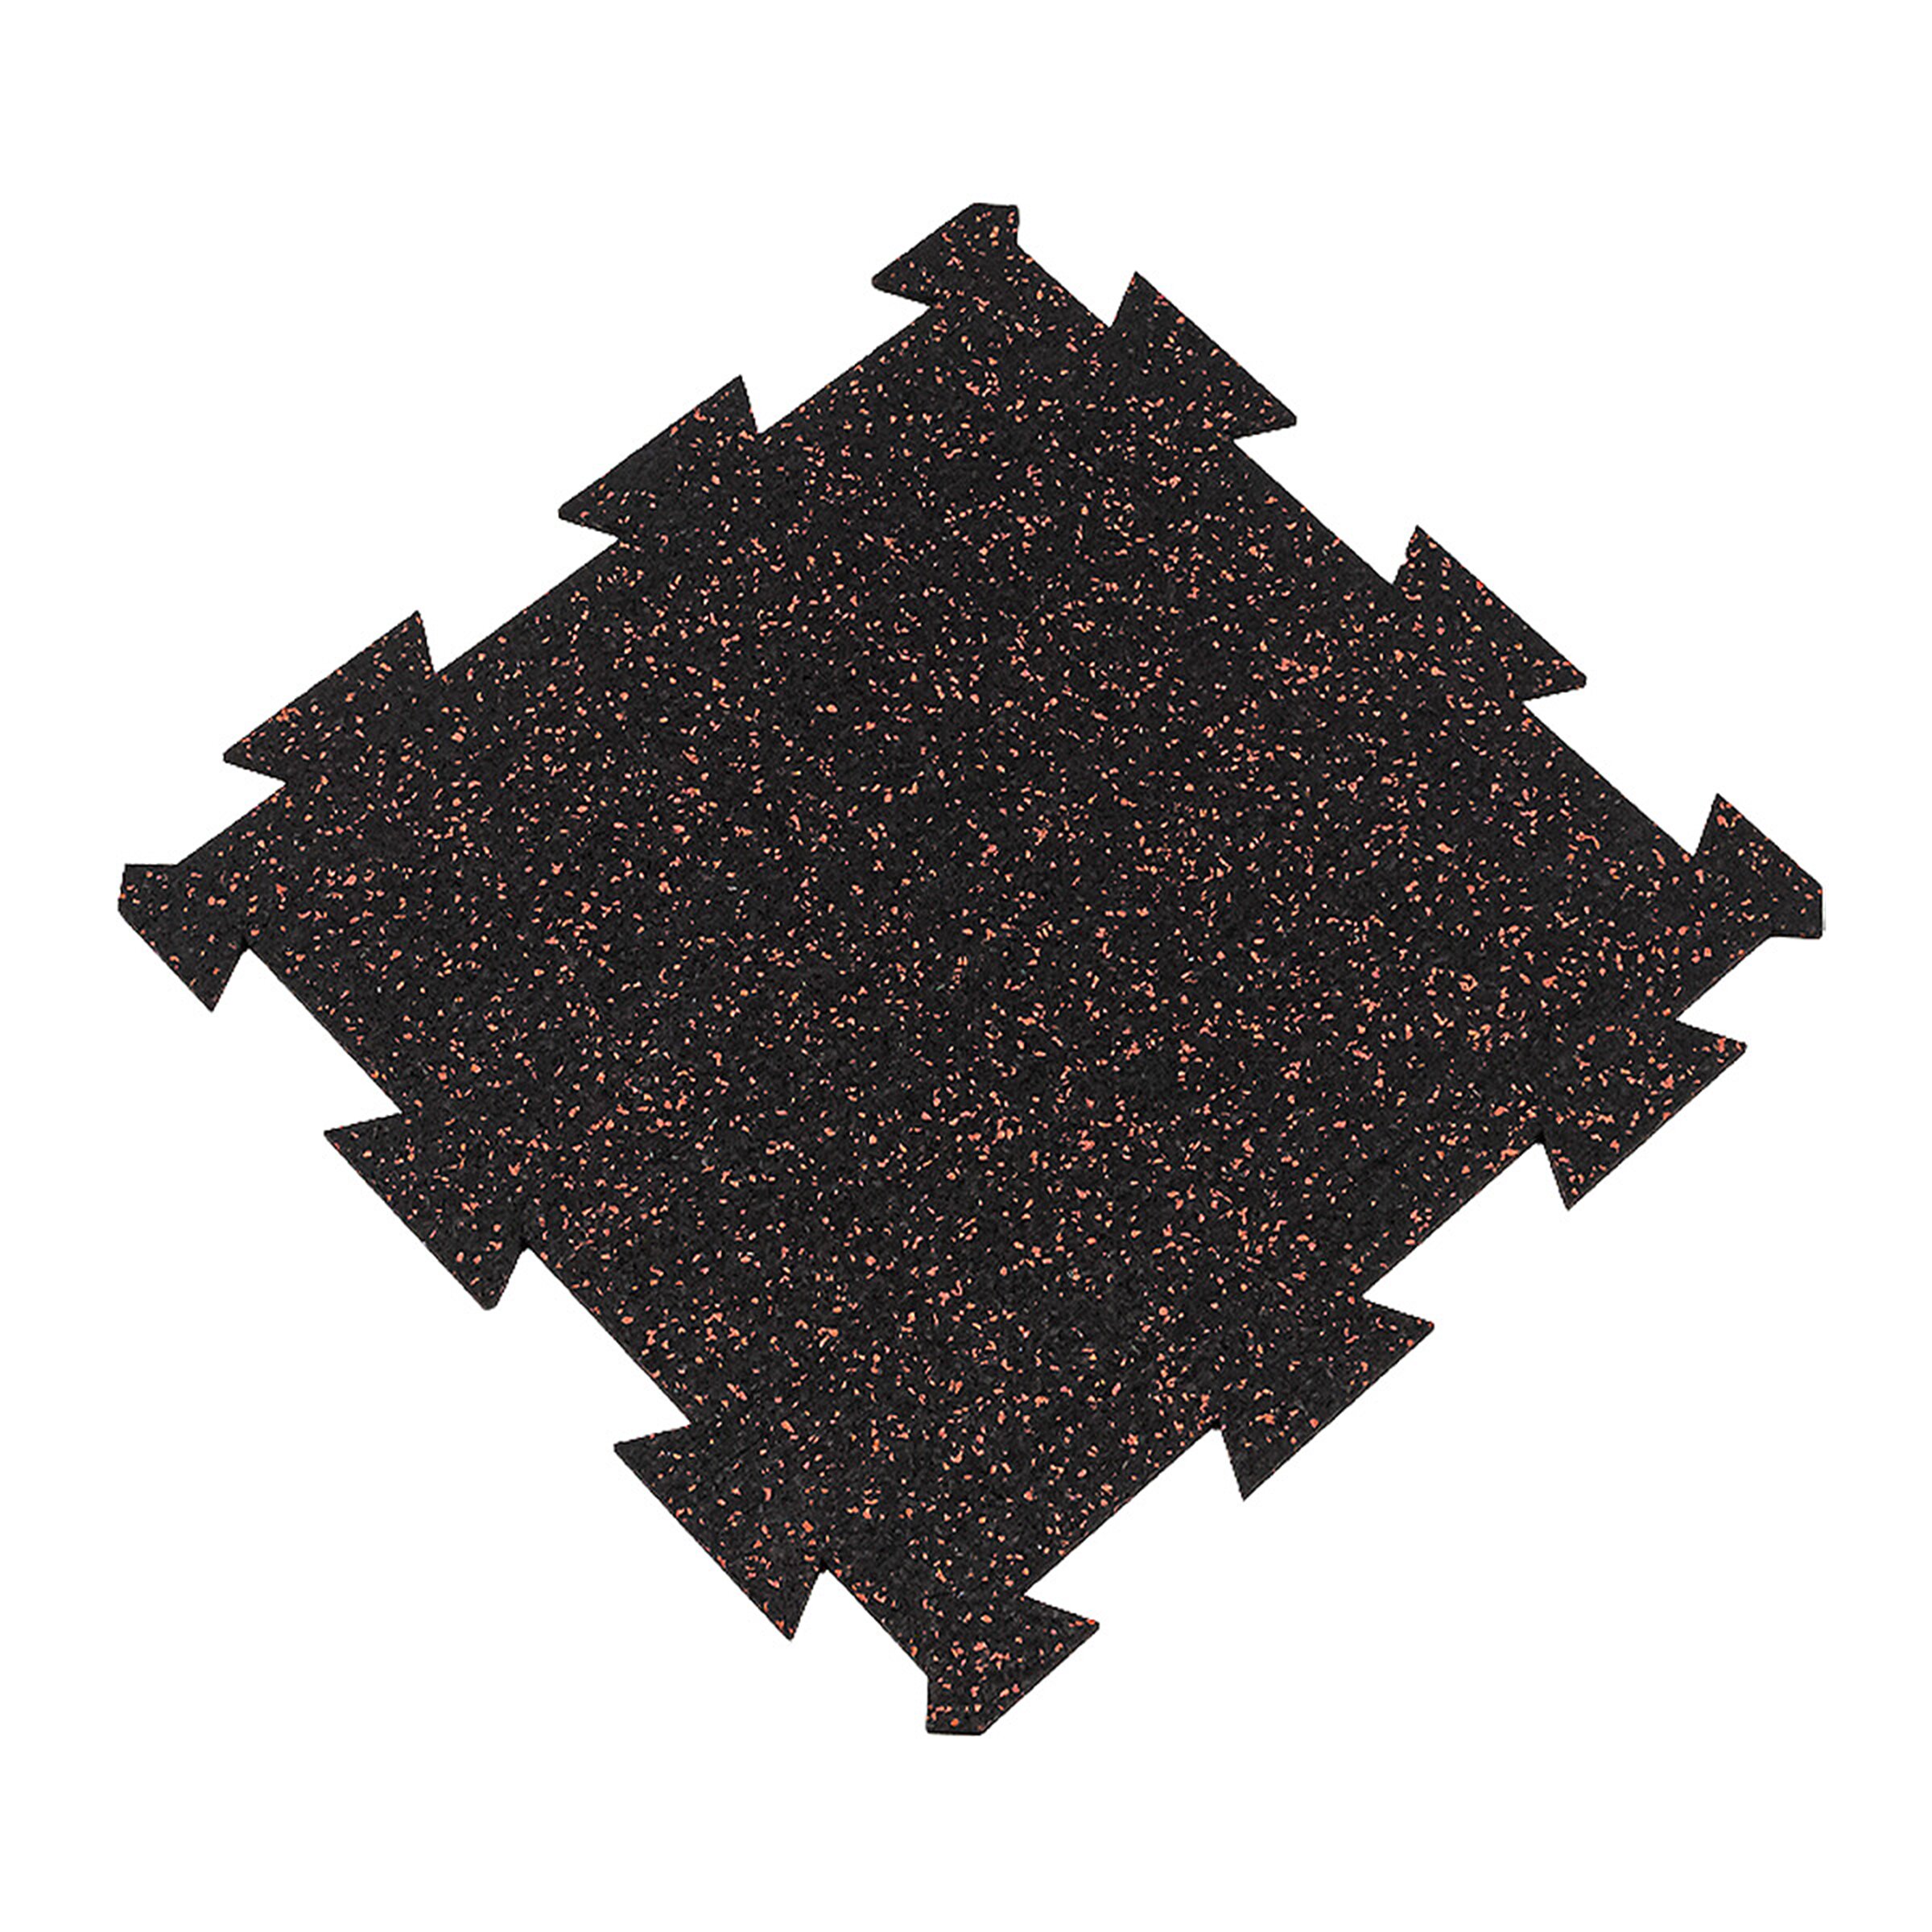 Čierno-červená gumová modulová puzzle dlažba (stred) FLOMA FitFlo SF1050 - dĺžka 50 cm, šírka 50 cm, výška 1,6 cm